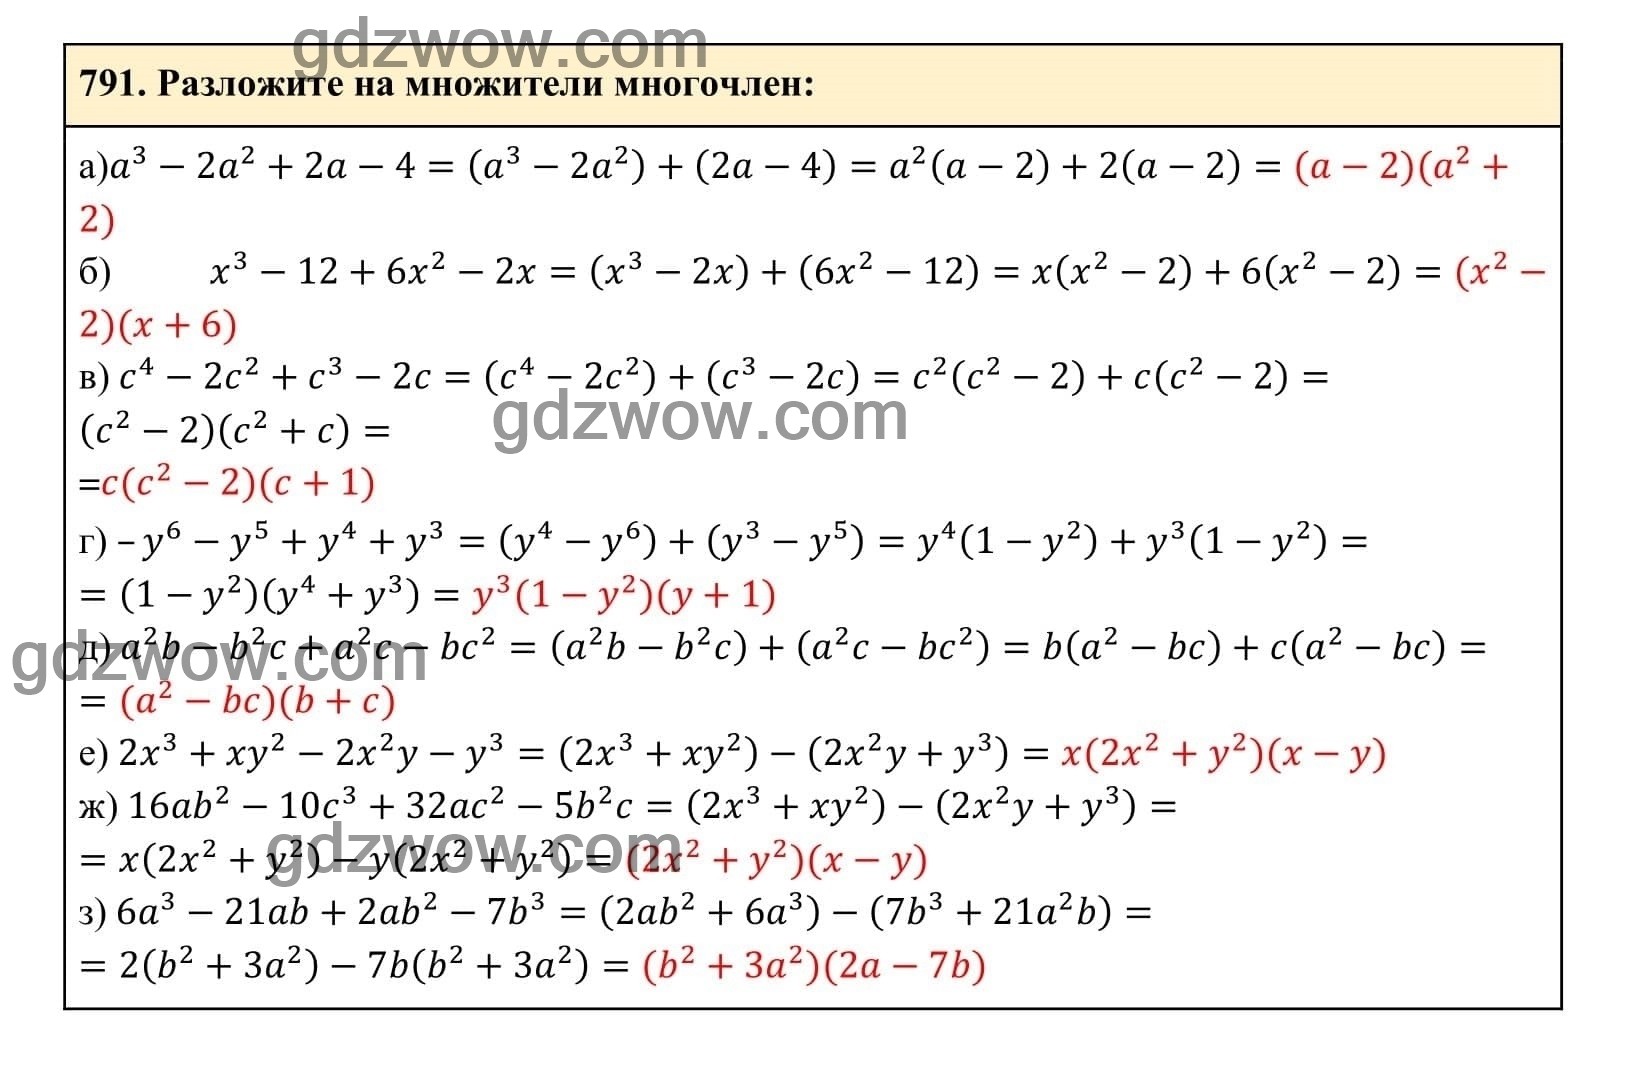 Упражнение 791 - ГДЗ по Алгебре 7 класс Учебник Макарычев (решебник) - GDZwow